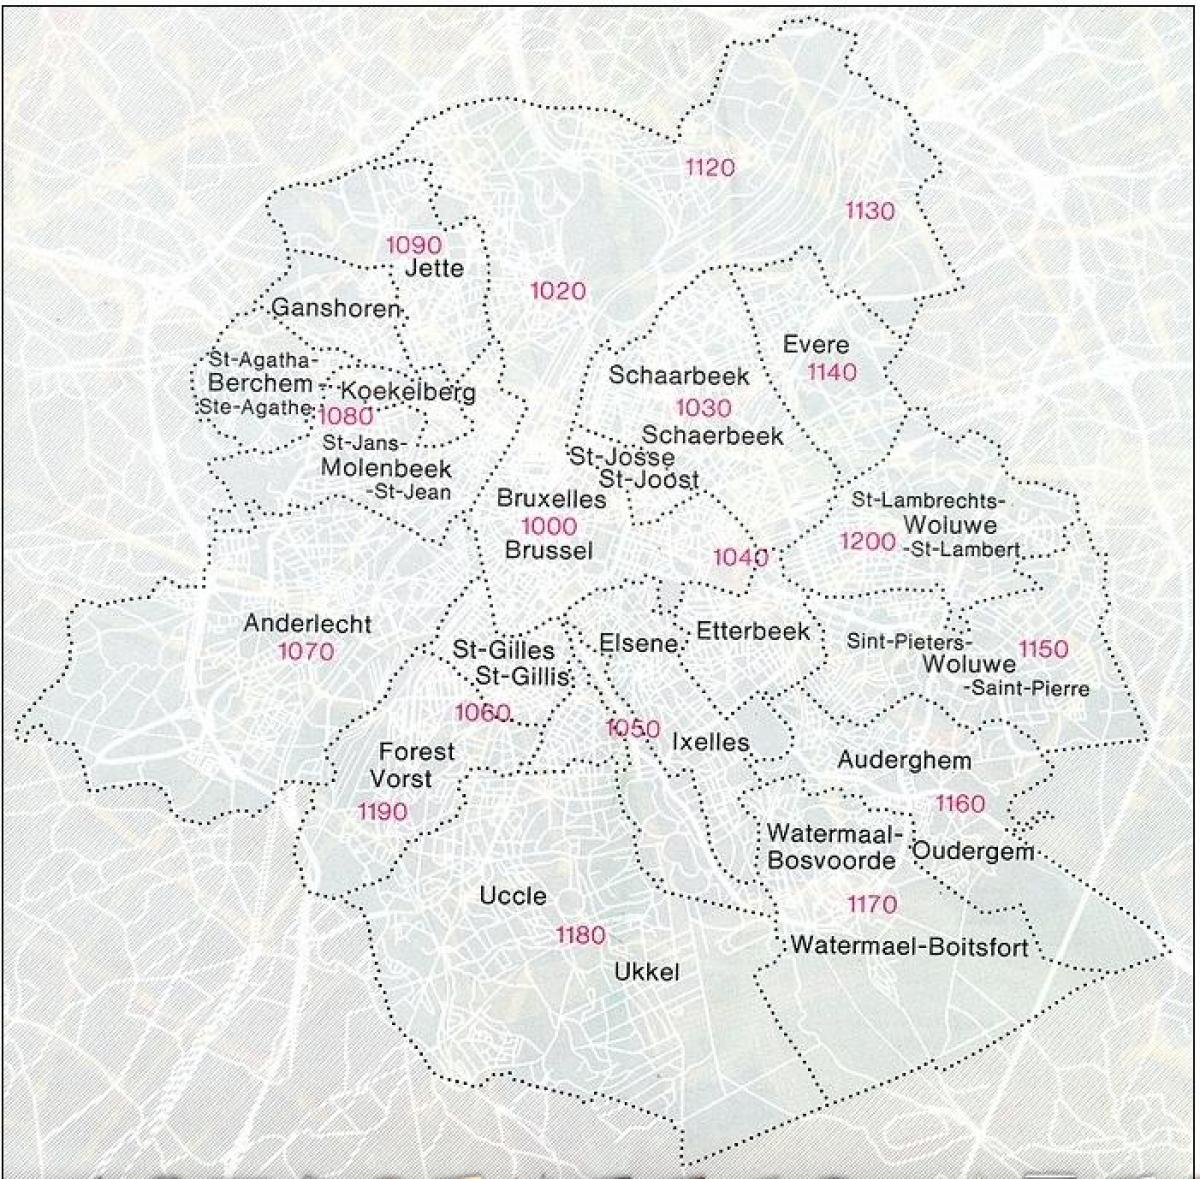 Mapa de códigos postales de Bruselas